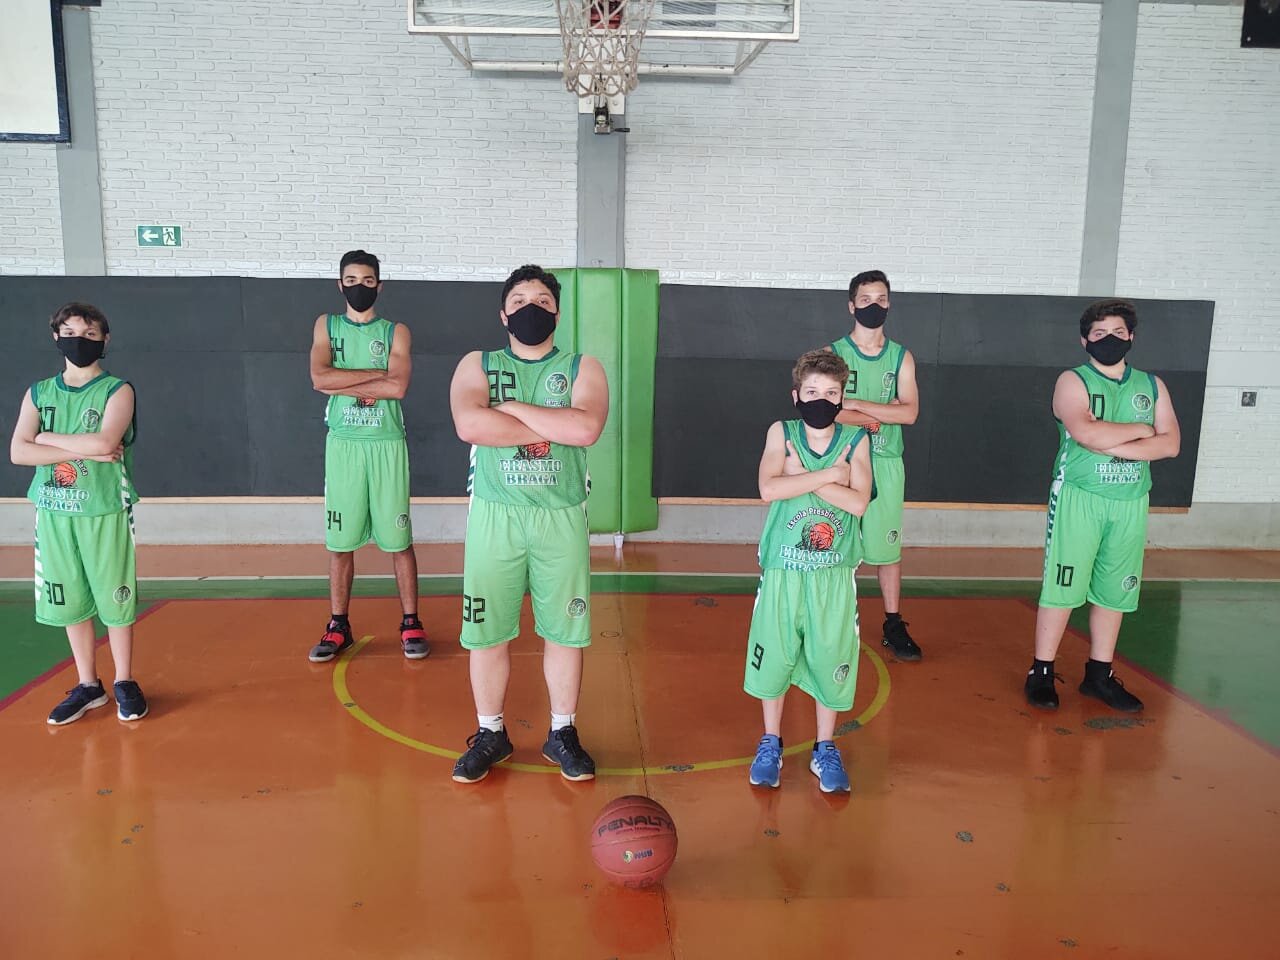 Atletas da Escola Presbiteriana Erasmo Braga, do Mato Grosso do Sul, posam para foto dentro de quadra de basquete. Todos estão de máscara.